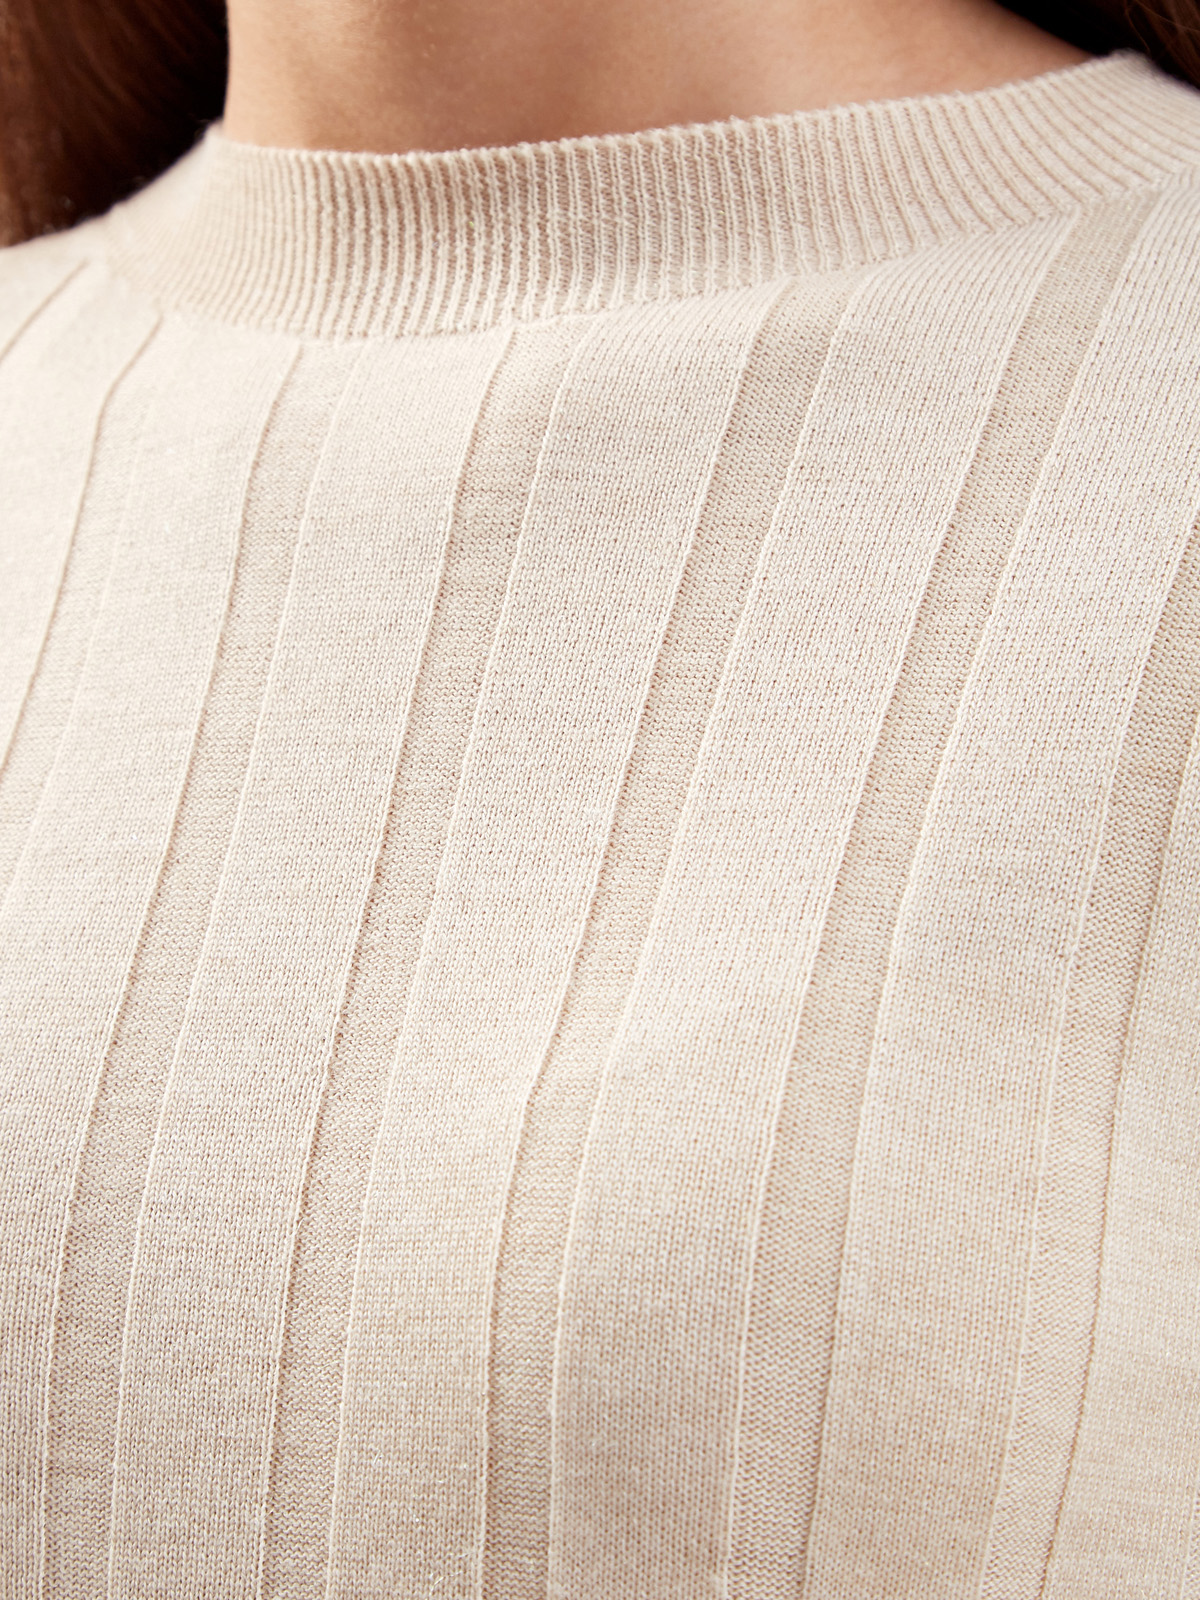 Облегающий джемпер из тонкой шерсти в фактурную полоску PESERICO, цвет бежевый, размер 44;38 - фото 5